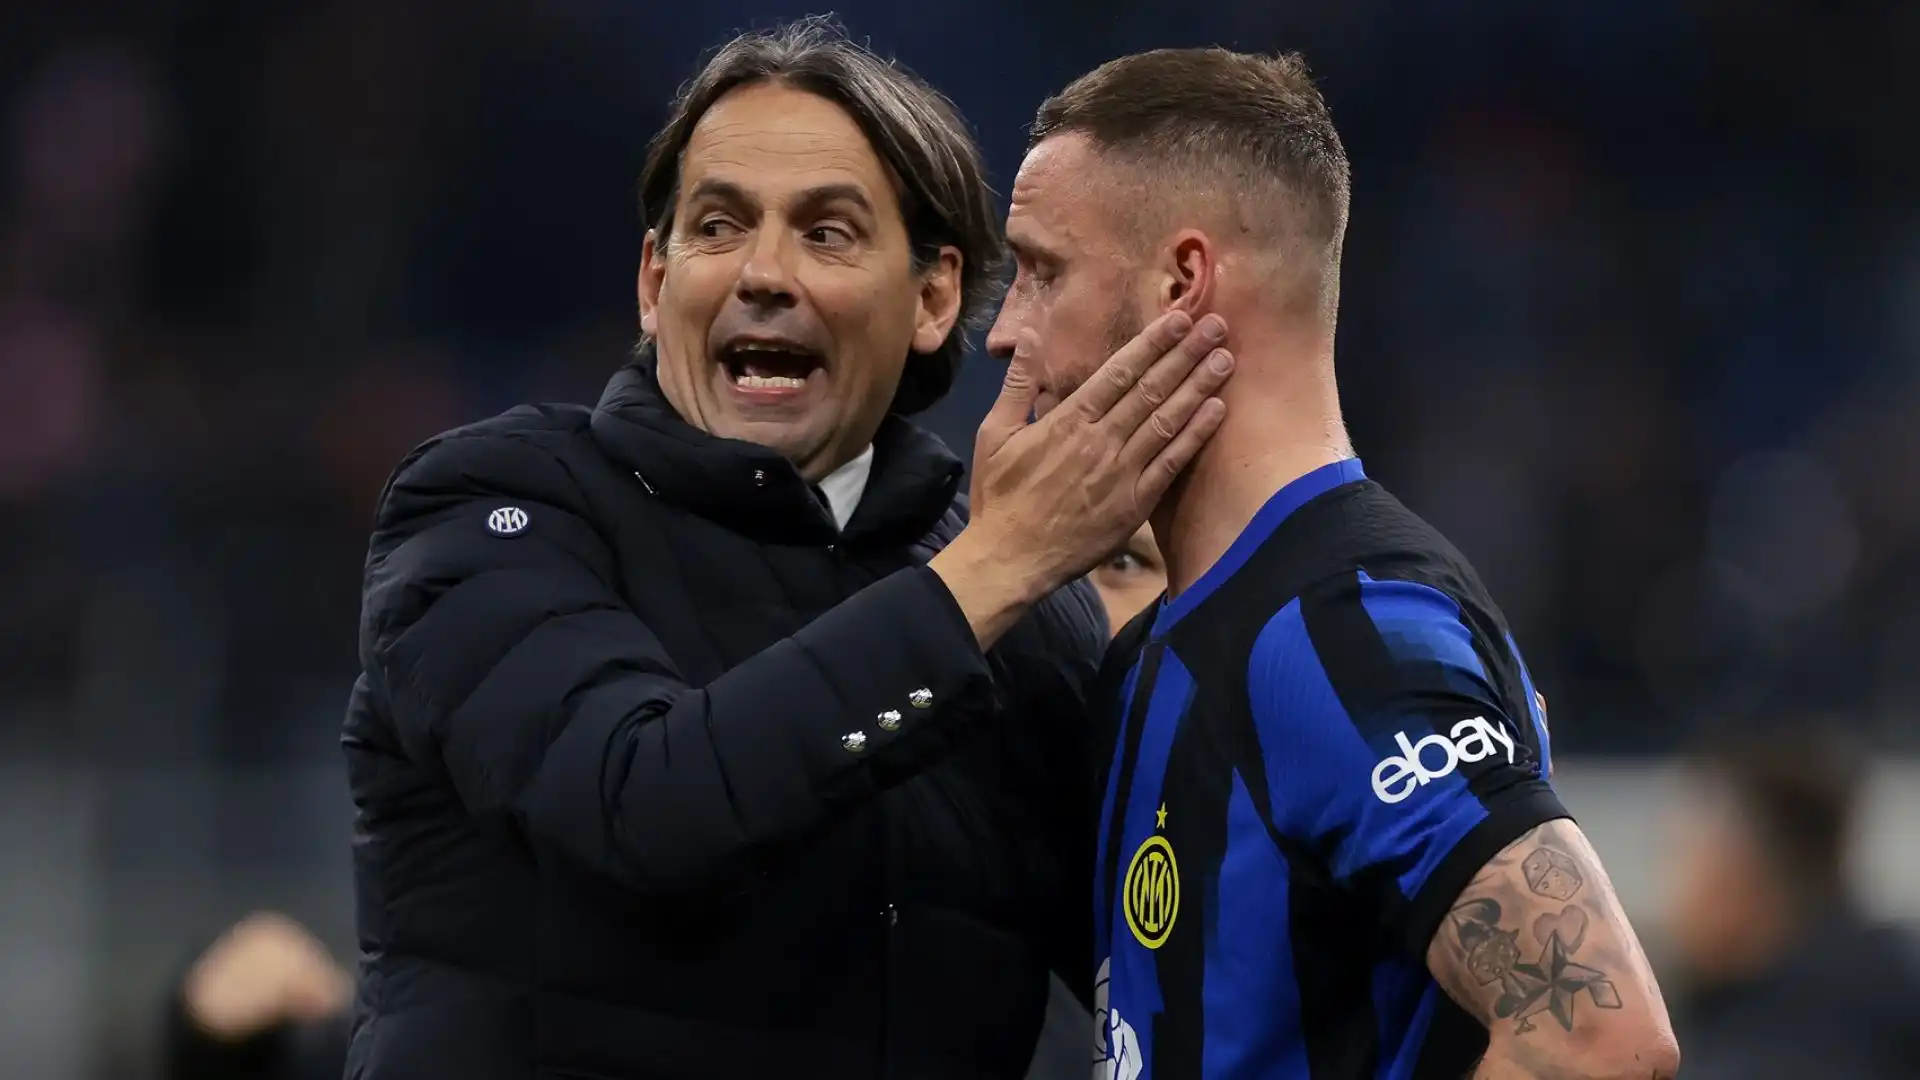 "Visto quello che succede all'estero, in Italia non possiamo lamentarci degli arbitri", ha detto Inzaghi dopo la partita